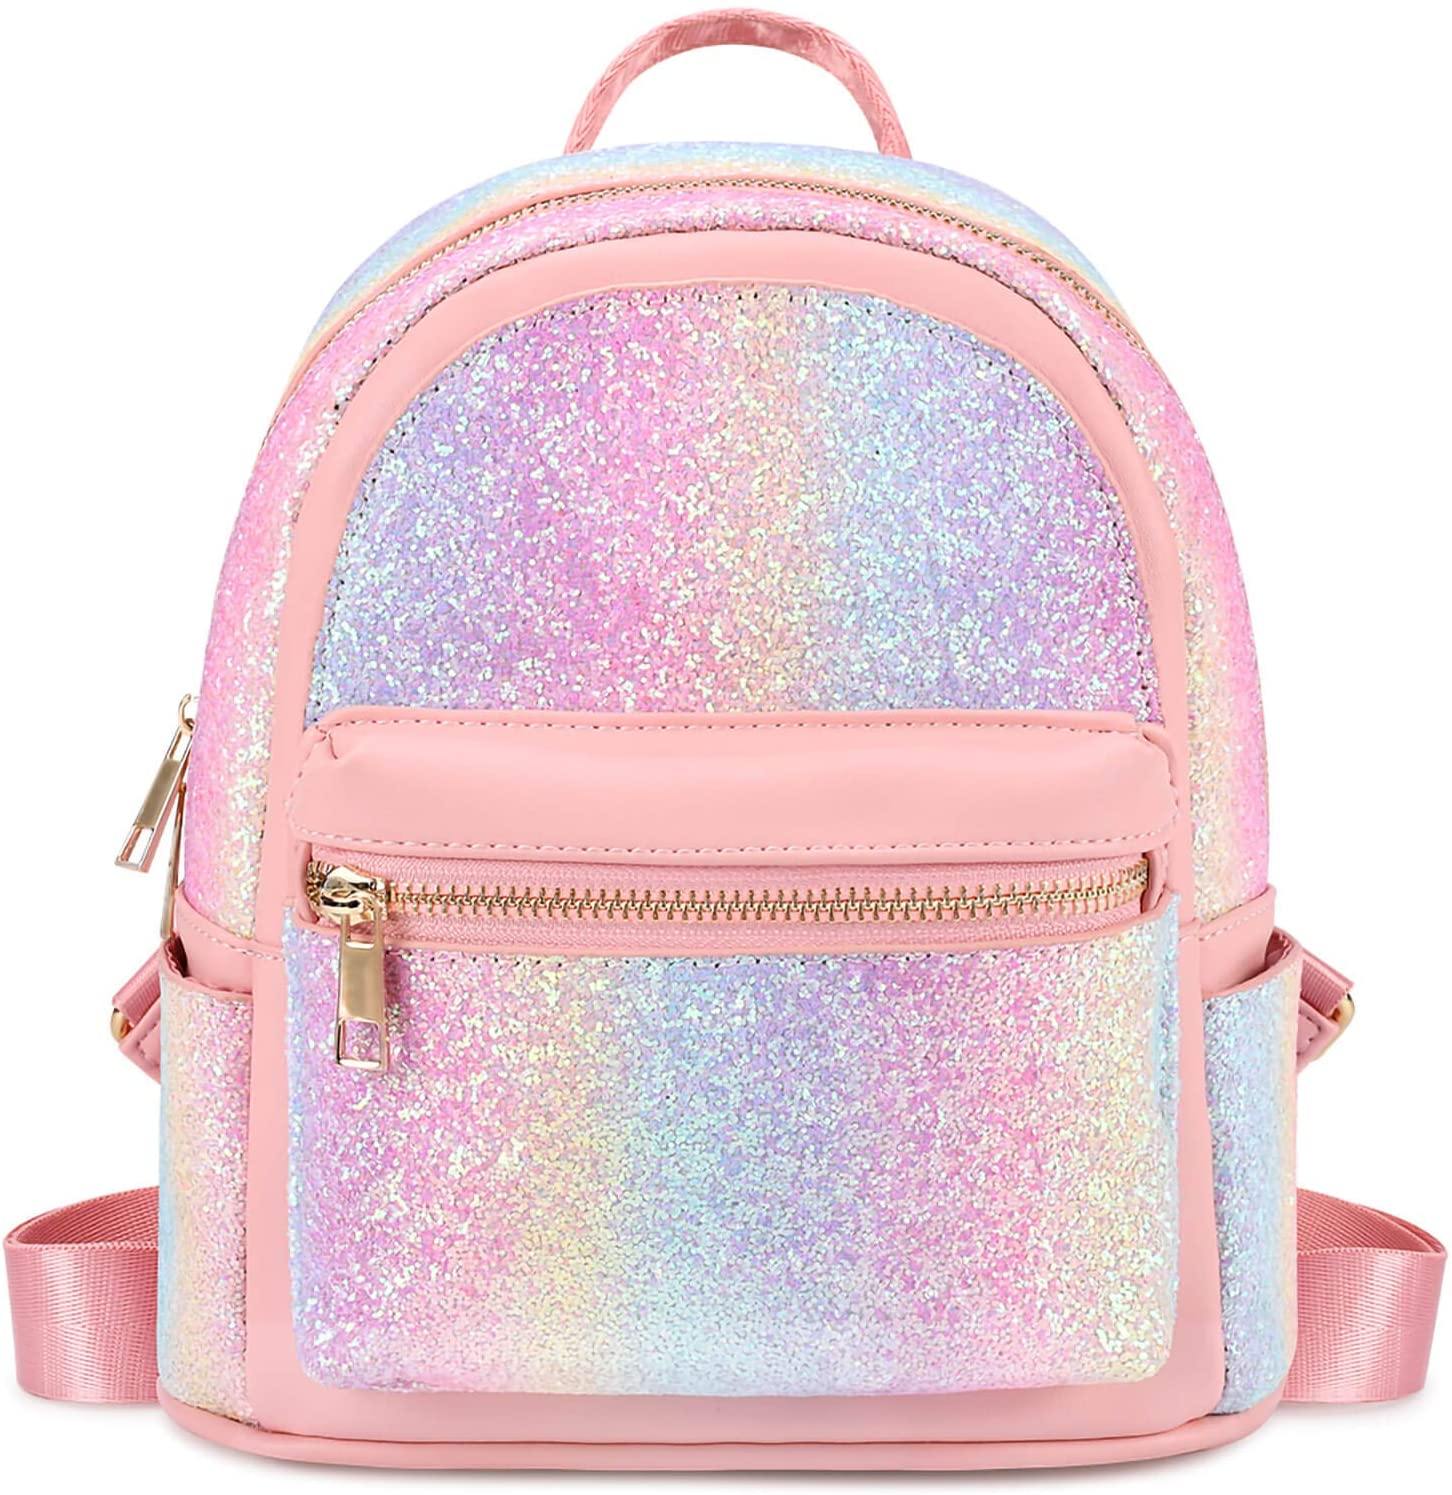 Glitter Rainbow Mini Backpack Backpack Mibasies Pink Blue Rainbow 